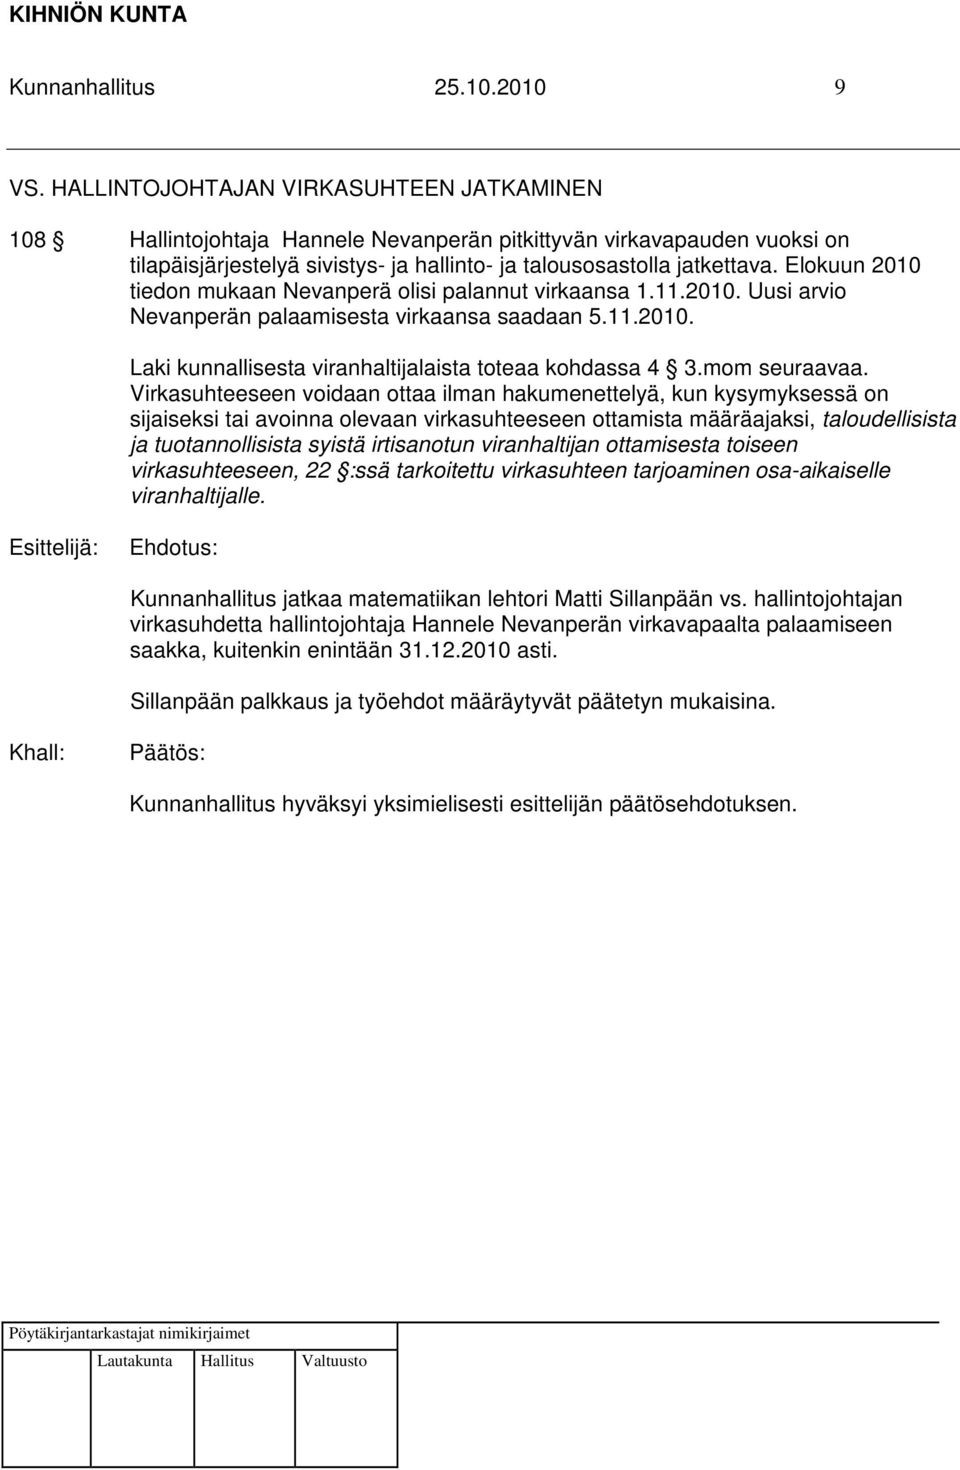 Elokuun 2010 tiedon mukaan Nevanperä olisi palannut virkaansa 1.11.2010. Uusi arvio Nevanperän palaamisesta virkaansa saadaan 5.11.2010. Laki kunnallisesta viranhaltijalaista toteaa kohdassa 4 3.